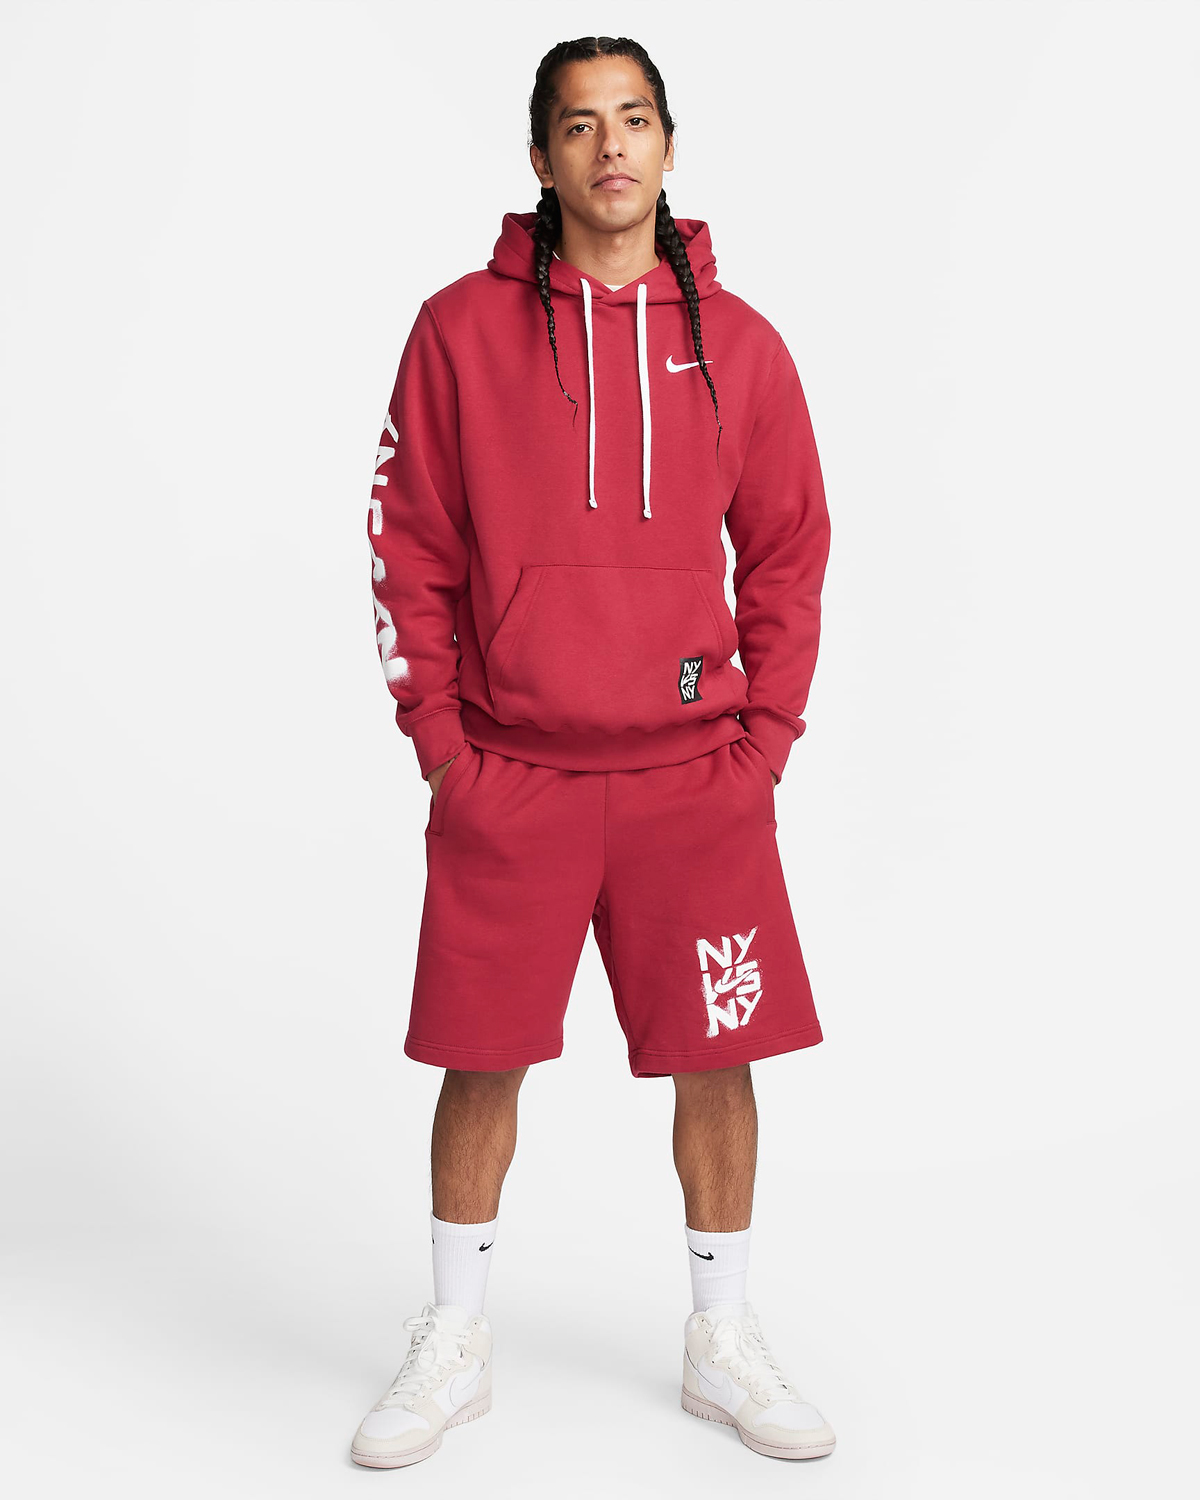 Nike-NY-vs-NY-Hoodie-and-Shorts-Noble-Red